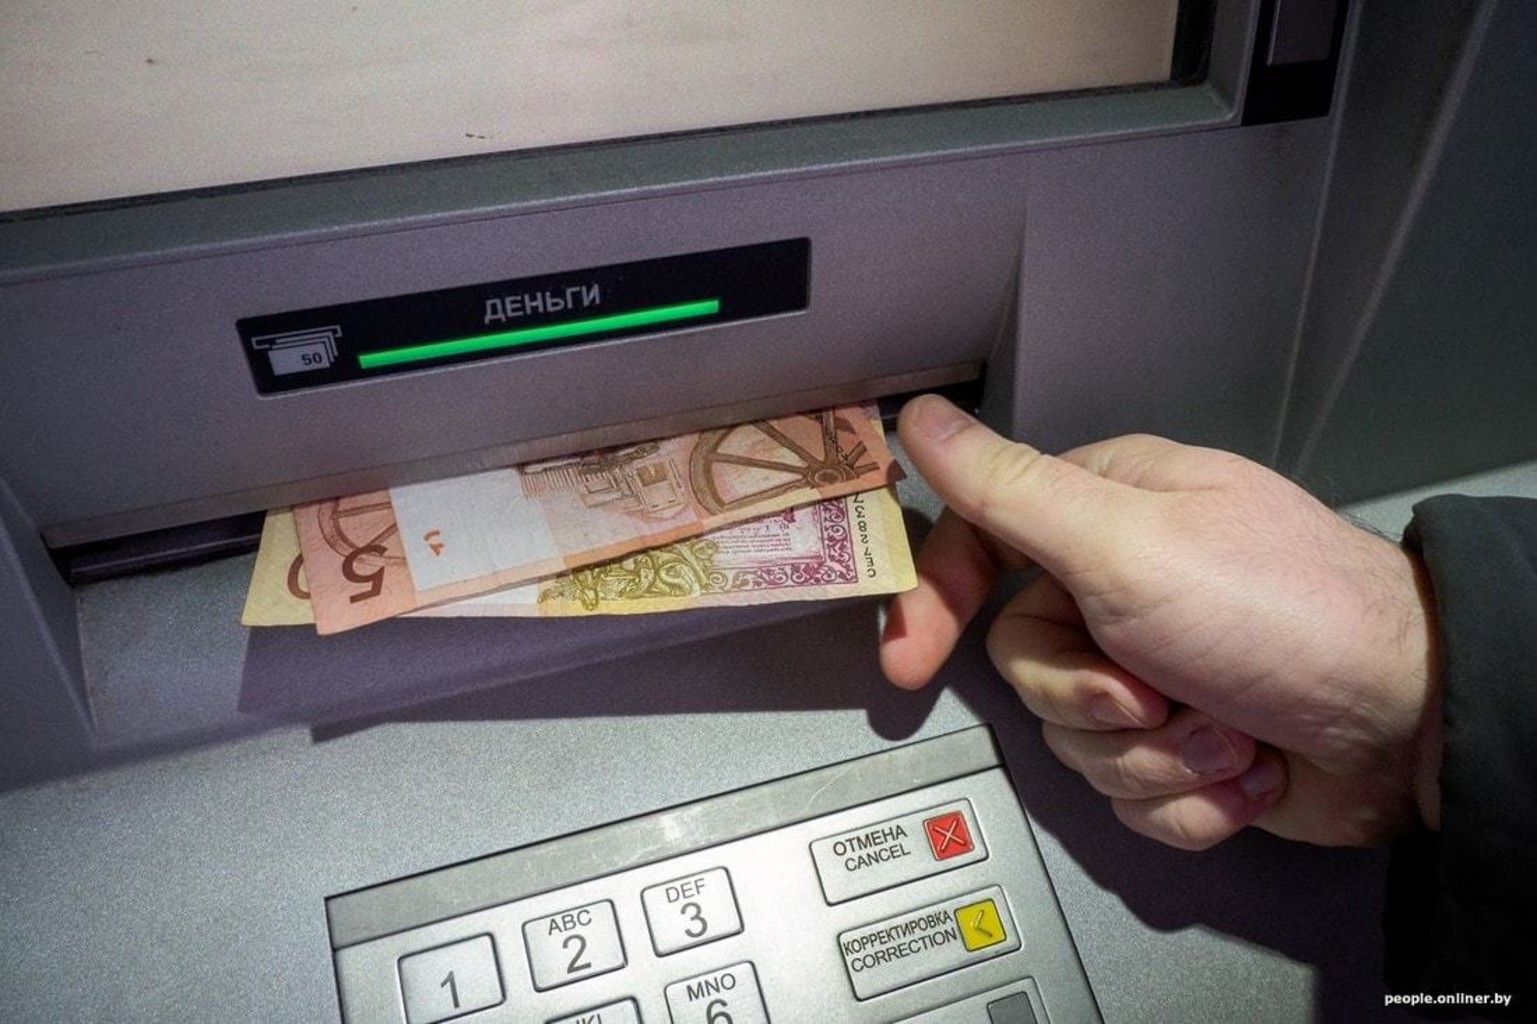 Банк деньги войти. Деньги в банкомате. Снятие наличных в банкомате. Белорусские купюры в банкомате. Выдача денег в банкомате.